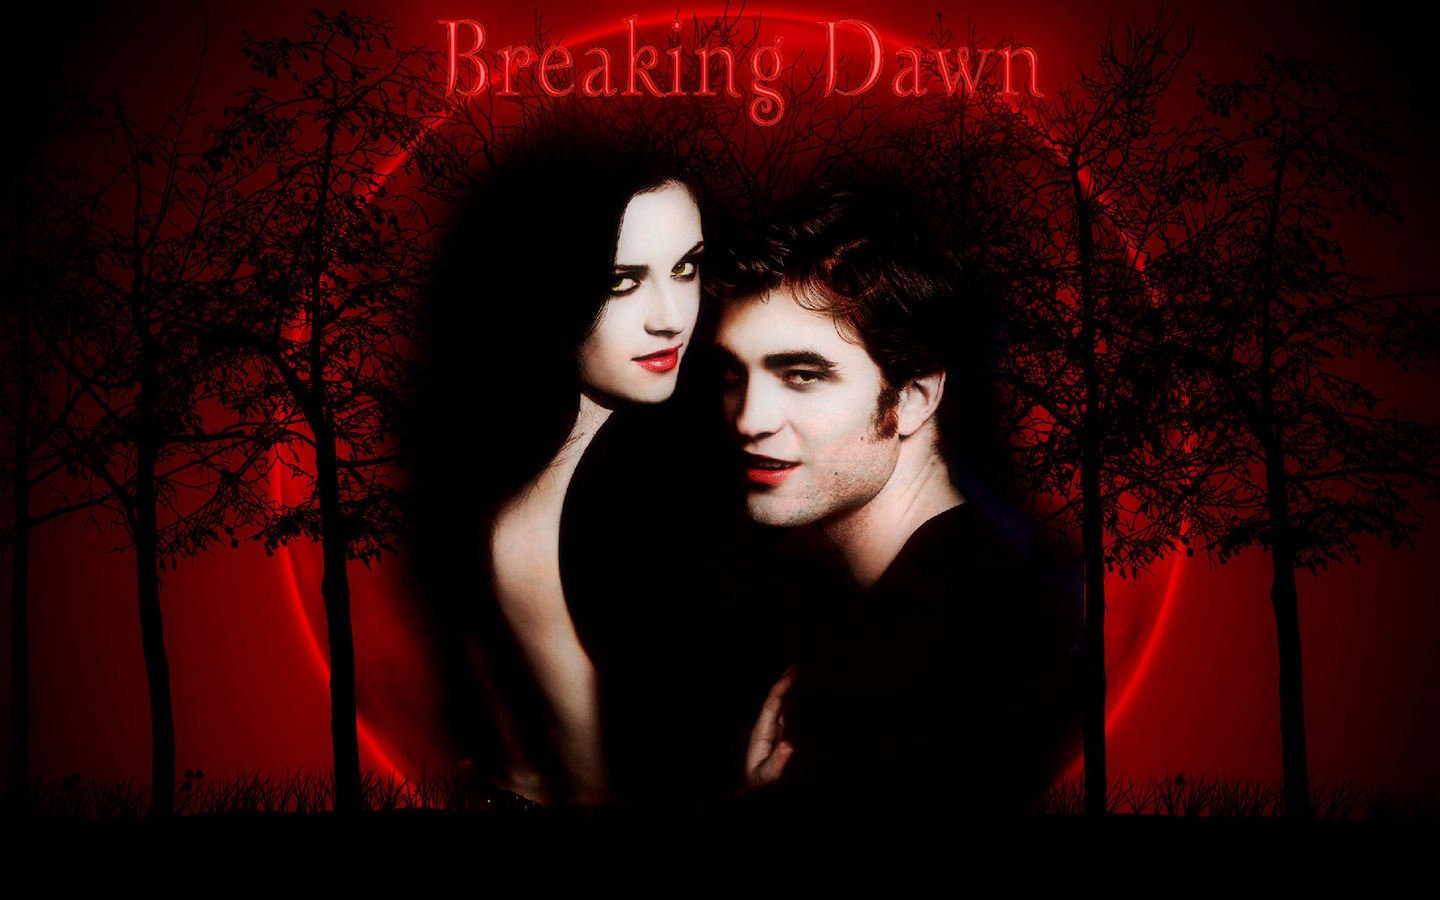 Edward and Bella - Edward Cullen Lovers Wallpaper (35697994) - Fanpop